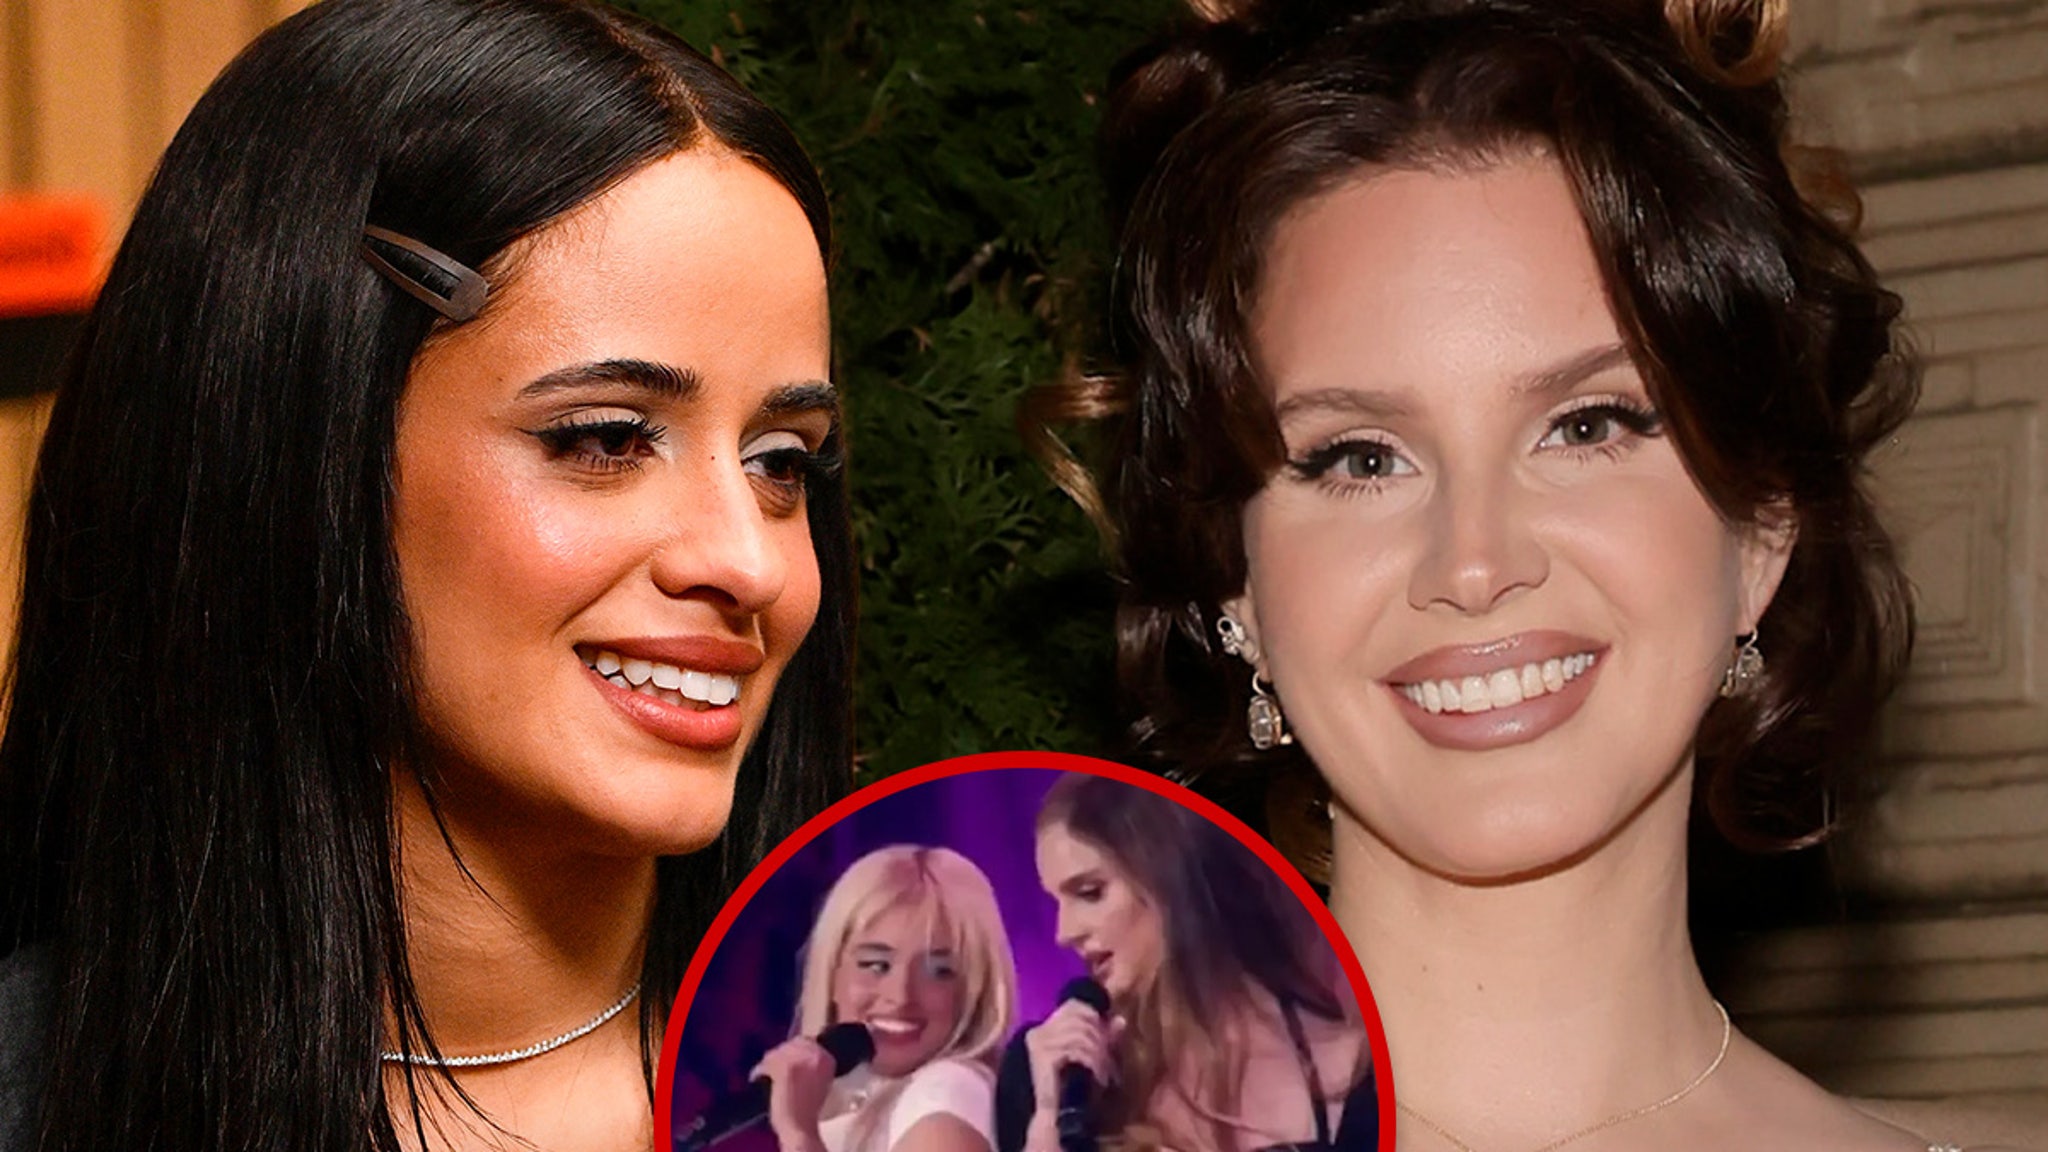 Lana Del Rey Surprises Coachella With Special Guest Camila Cabello